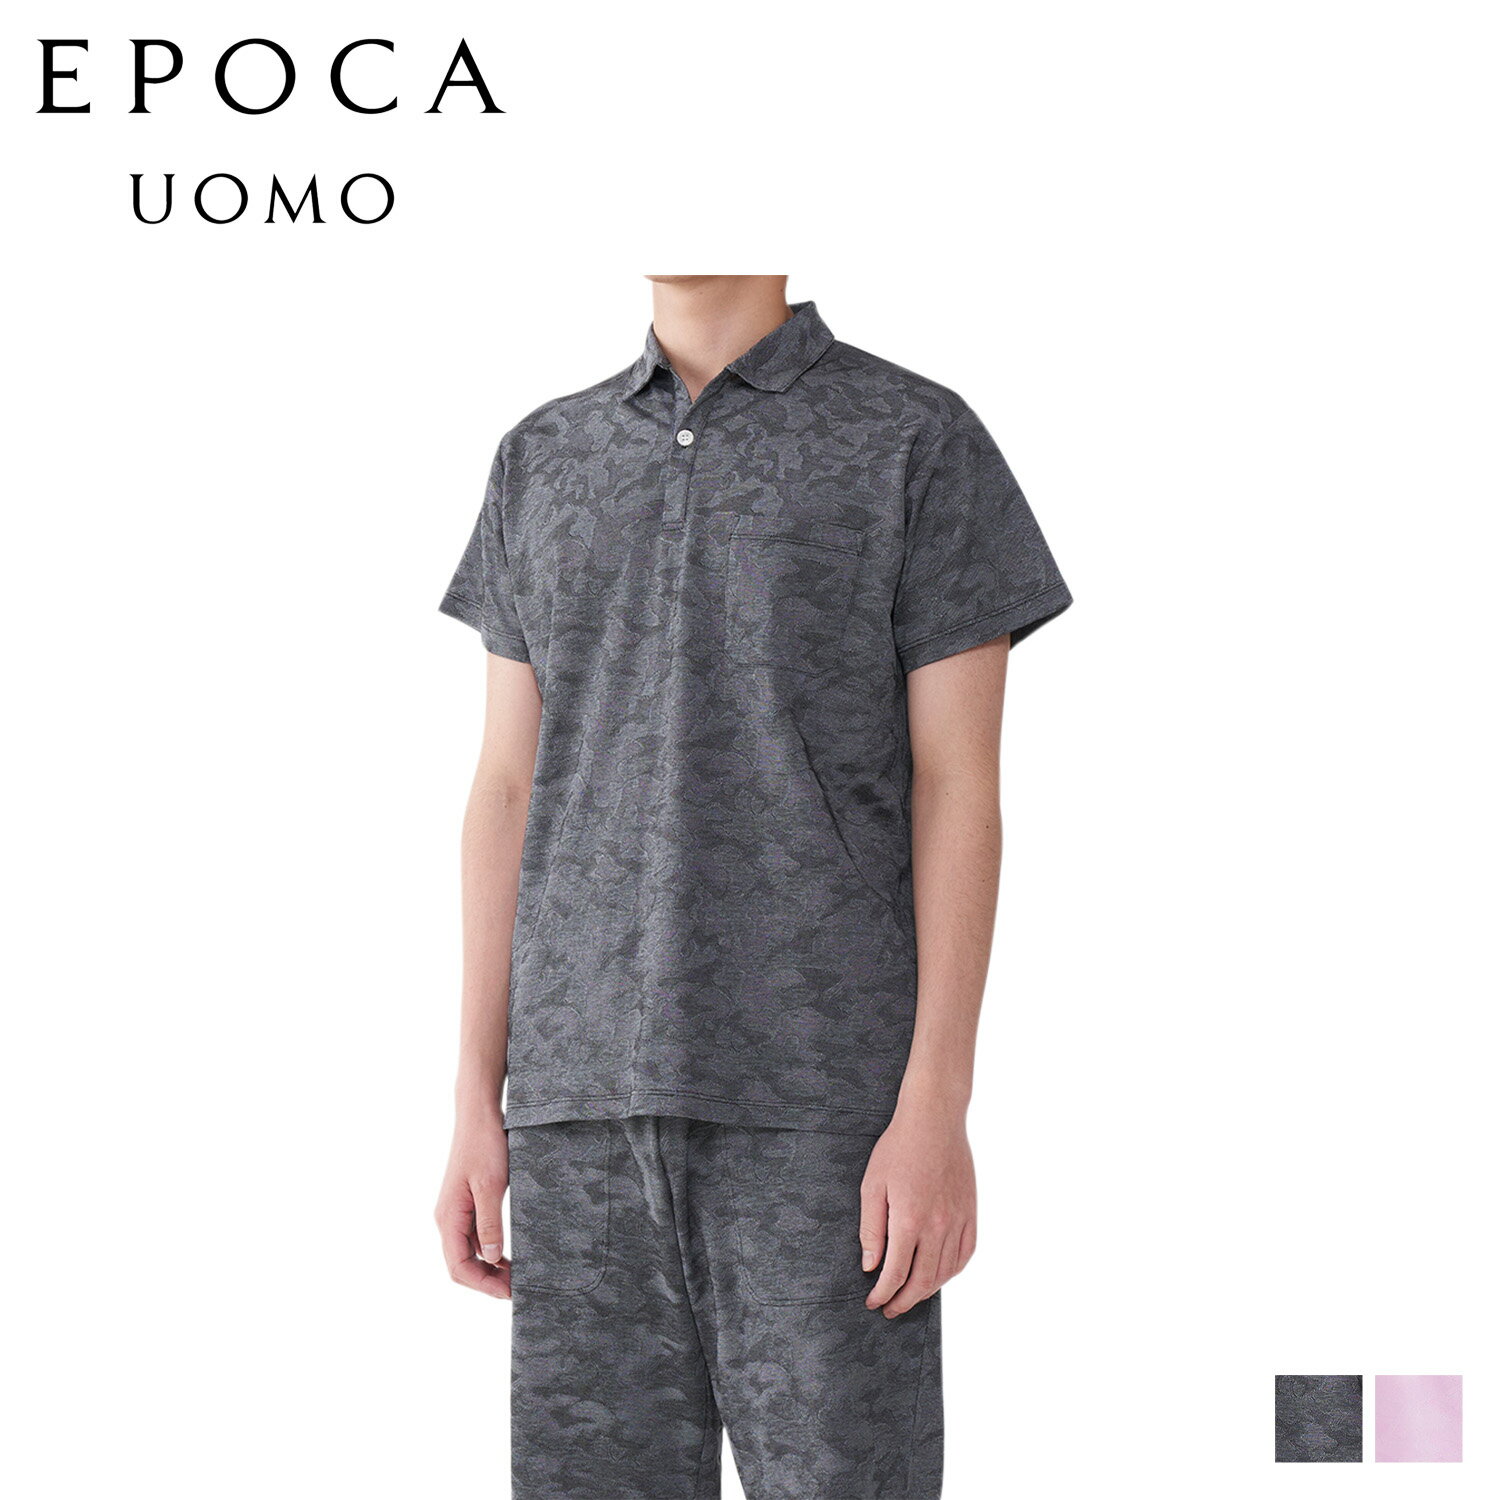 EPOCA UOMO POLO SHIRTS エポカ ウォモ ポロシャツ 半袖 ホームウェア ルームウェア メンズ カモ柄 迷彩 ブラック ピンク 黒 0400-38